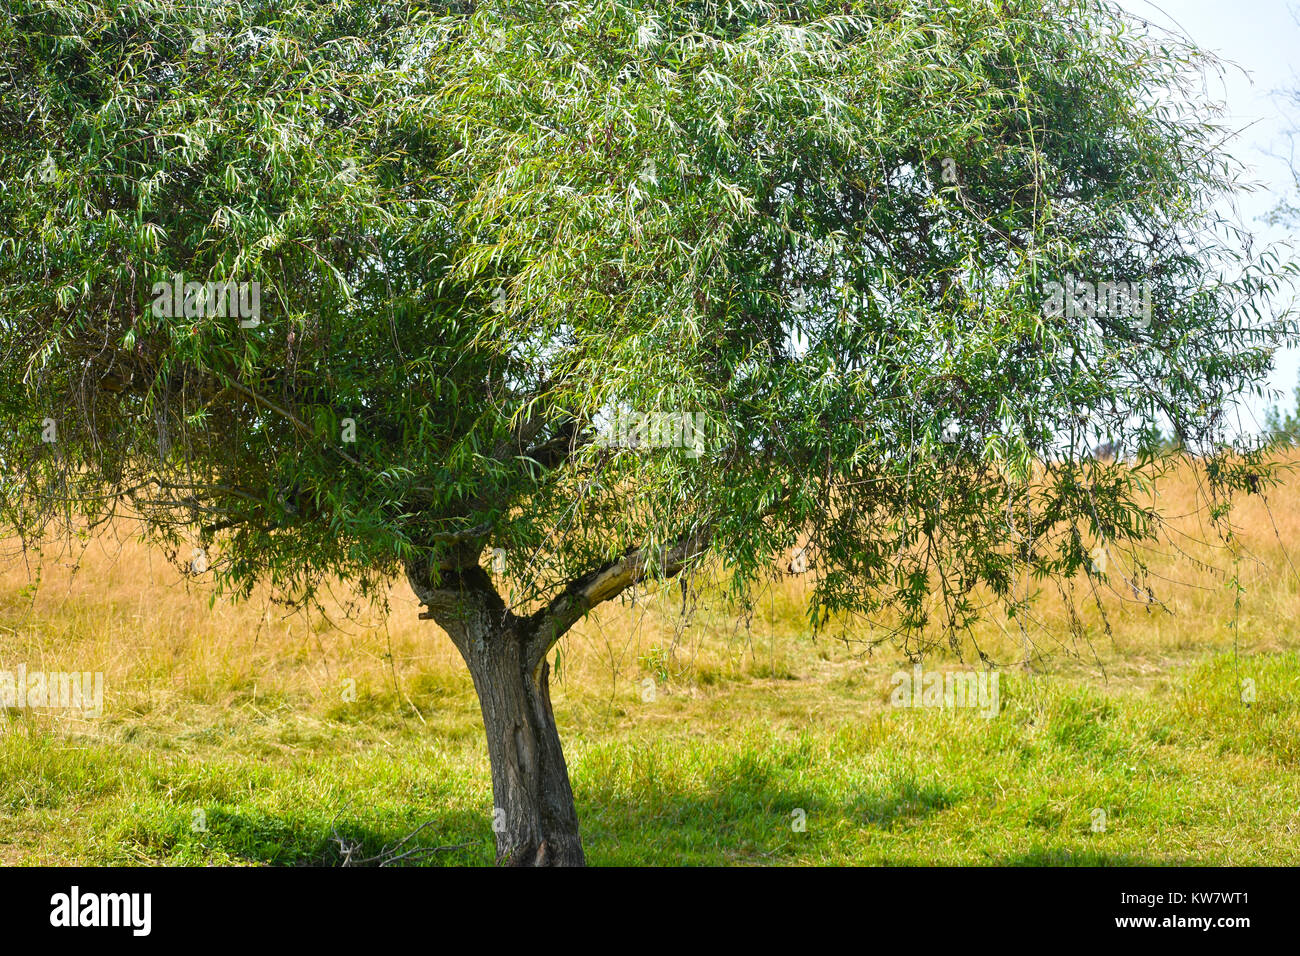 Eine uniuqe Baum in der Nähe aufwachsen, wachsen in einem Feld mit einem Schatten unter dem Baum. Grünes Gras ist direkt unter dem Baum und dem Hintergrund Grass ist ein Stockfoto